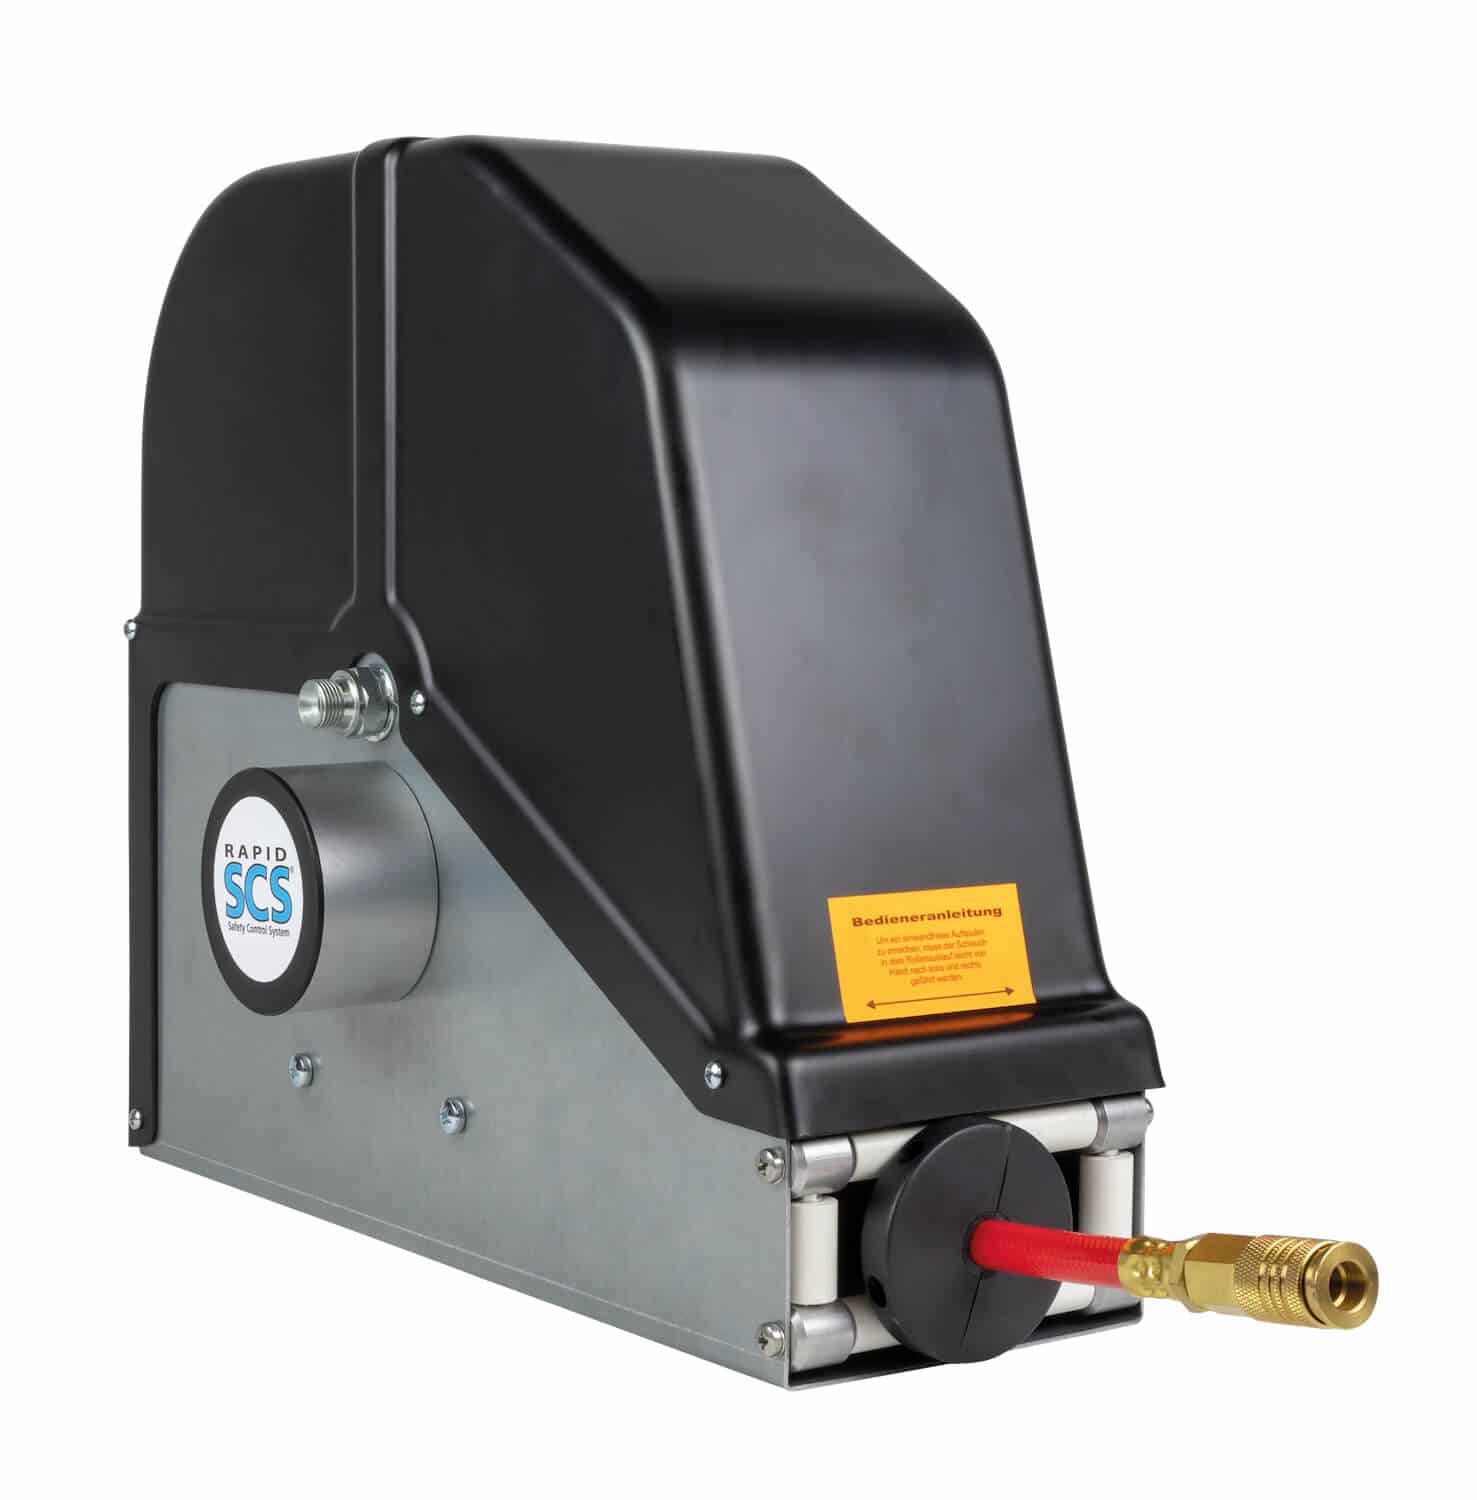 Automatischer Schlauchaufroller für technische Gase für bis zu 15 m Schlauch DN 10 in geschlossener Ausführung, zur Wand-, Boden- oder Deckenmontage.